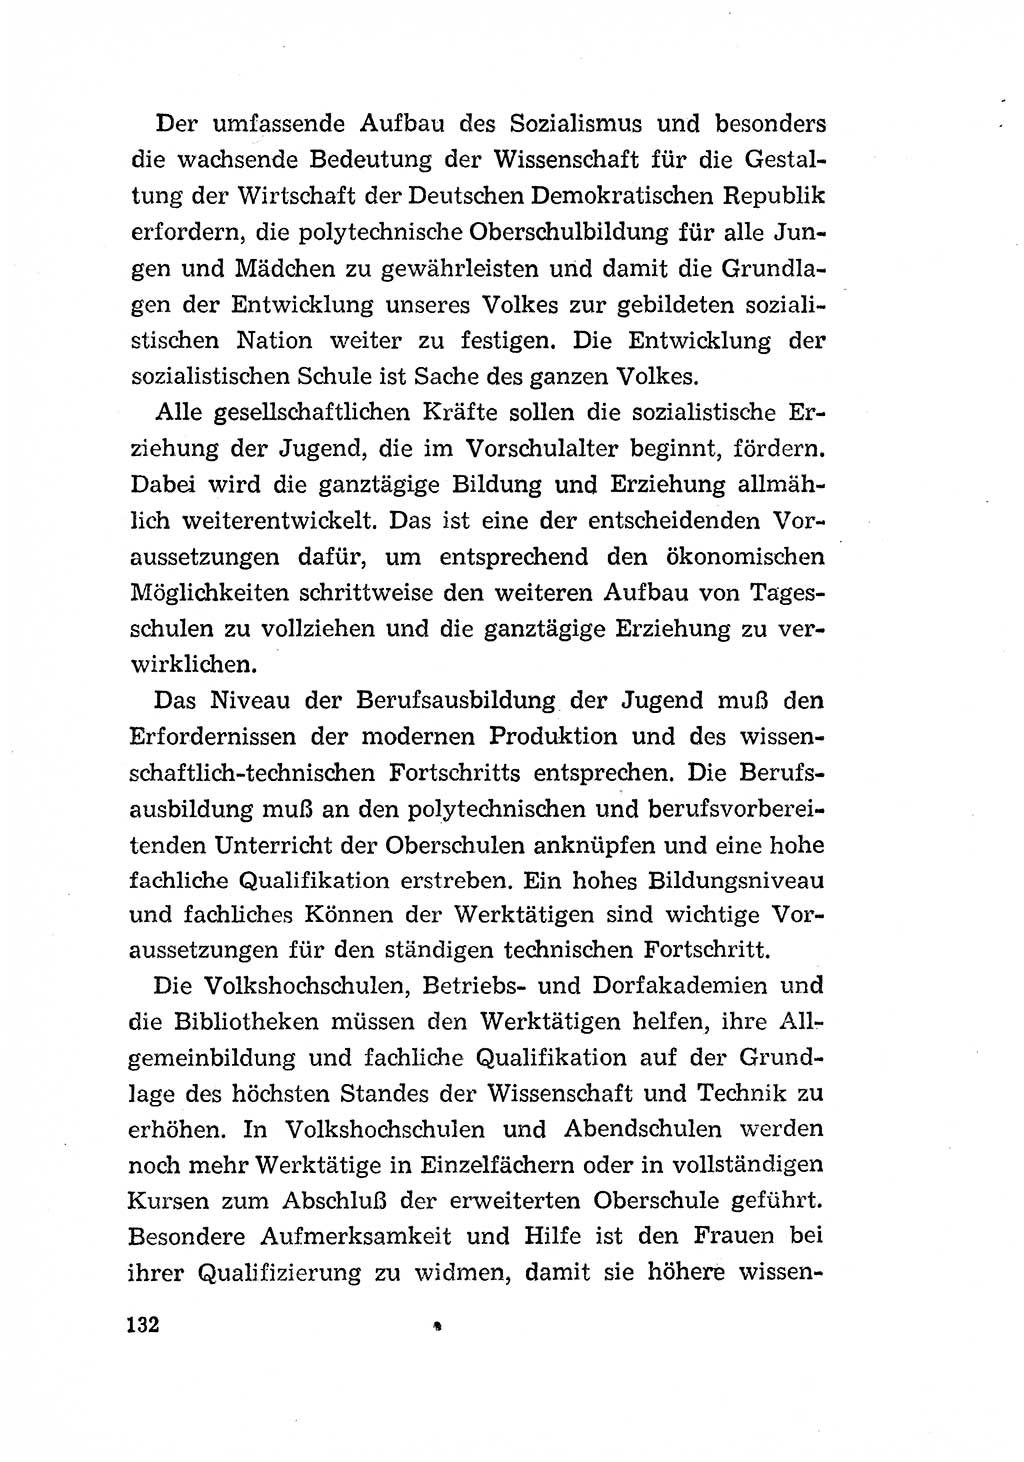 Programm der Sozialistischen Einheitspartei Deutschlands (SED) [Deutsche Demokratische Republik (DDR)] 1963, Seite 132 (Progr. SED DDR 1963, S. 132)